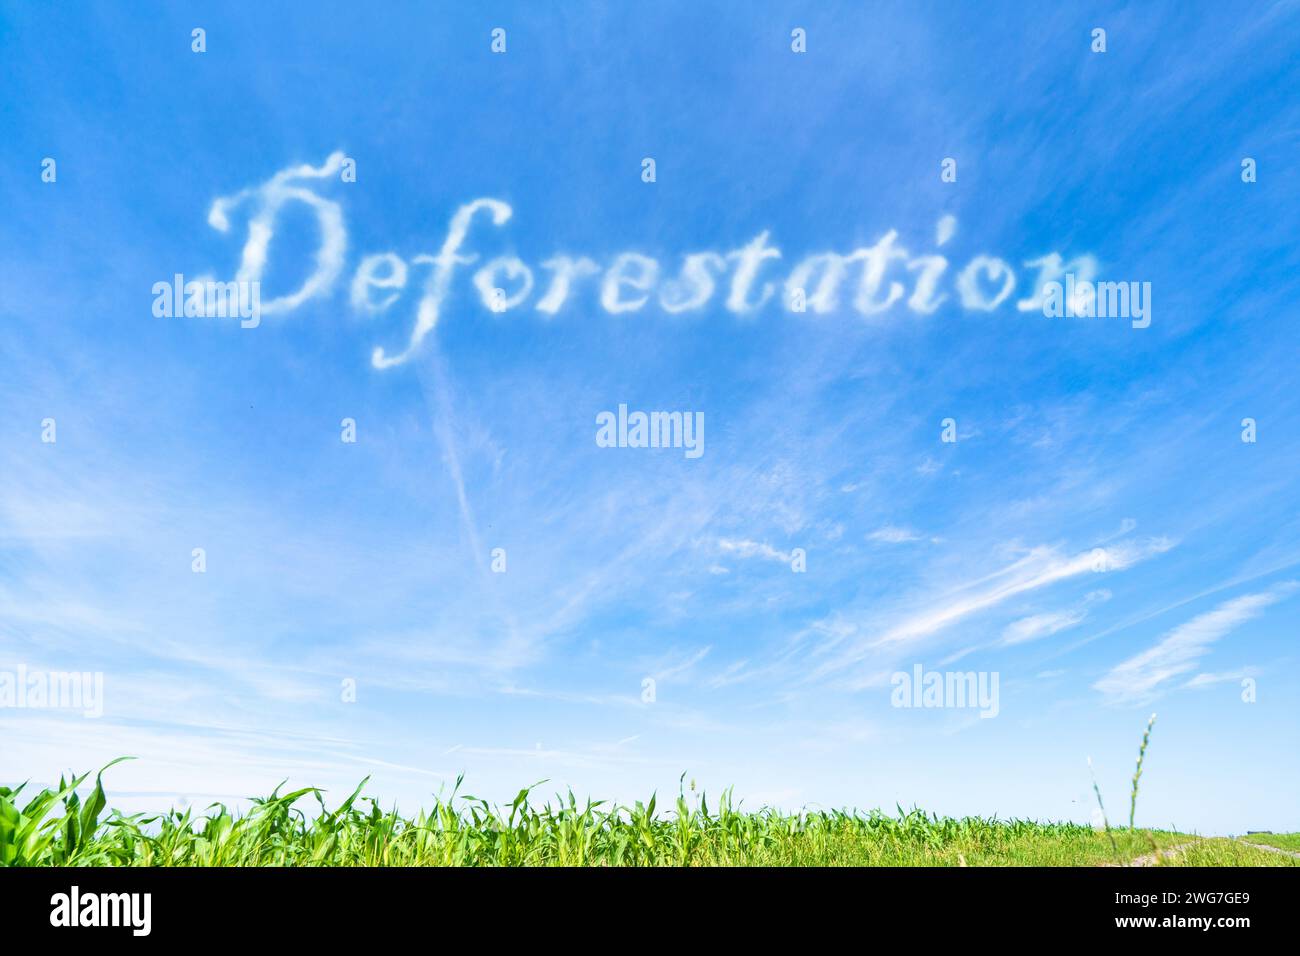 Entwaldung: Rodung von Wäldern für landwirtschaftliche Zwecke, städtische Entwicklung oder andere Zwecke. Stockfoto